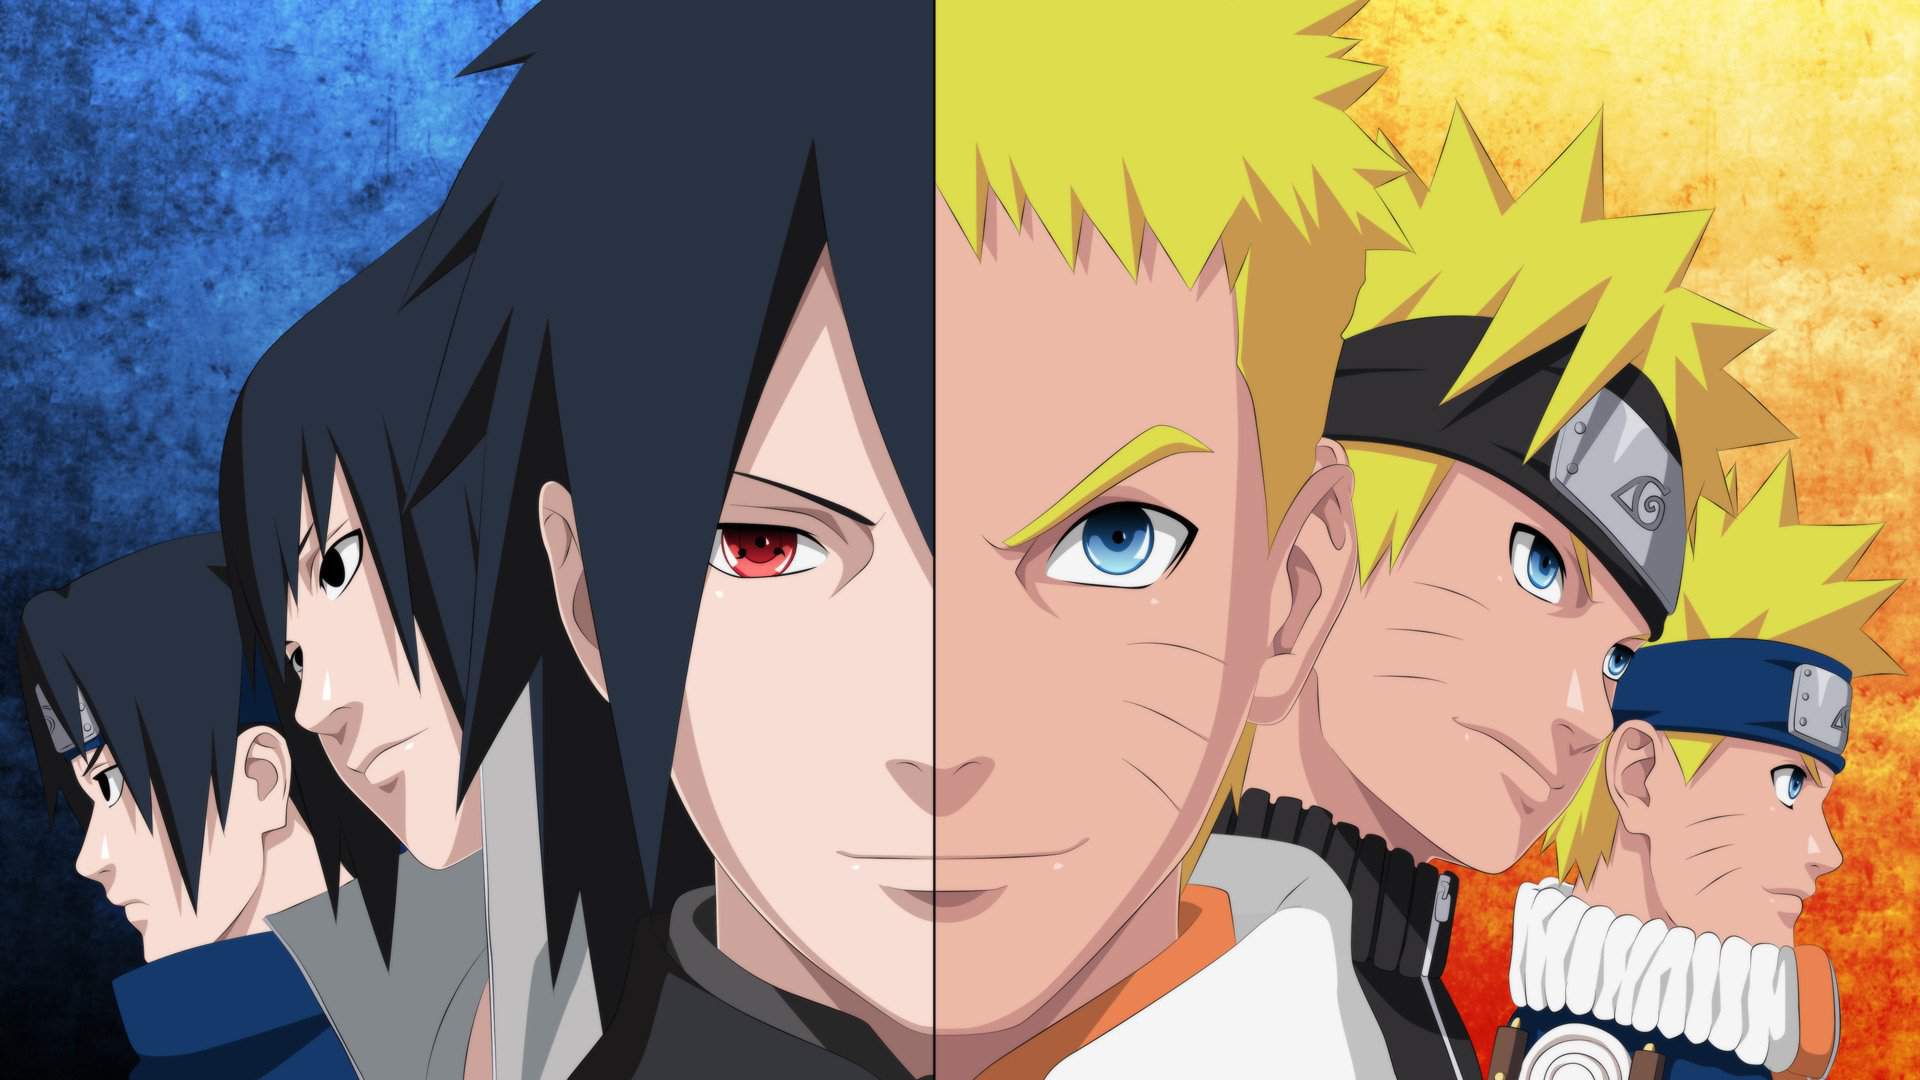 Afinal, quem venceria uma luta entre o Naruto e o Sasuke atual em